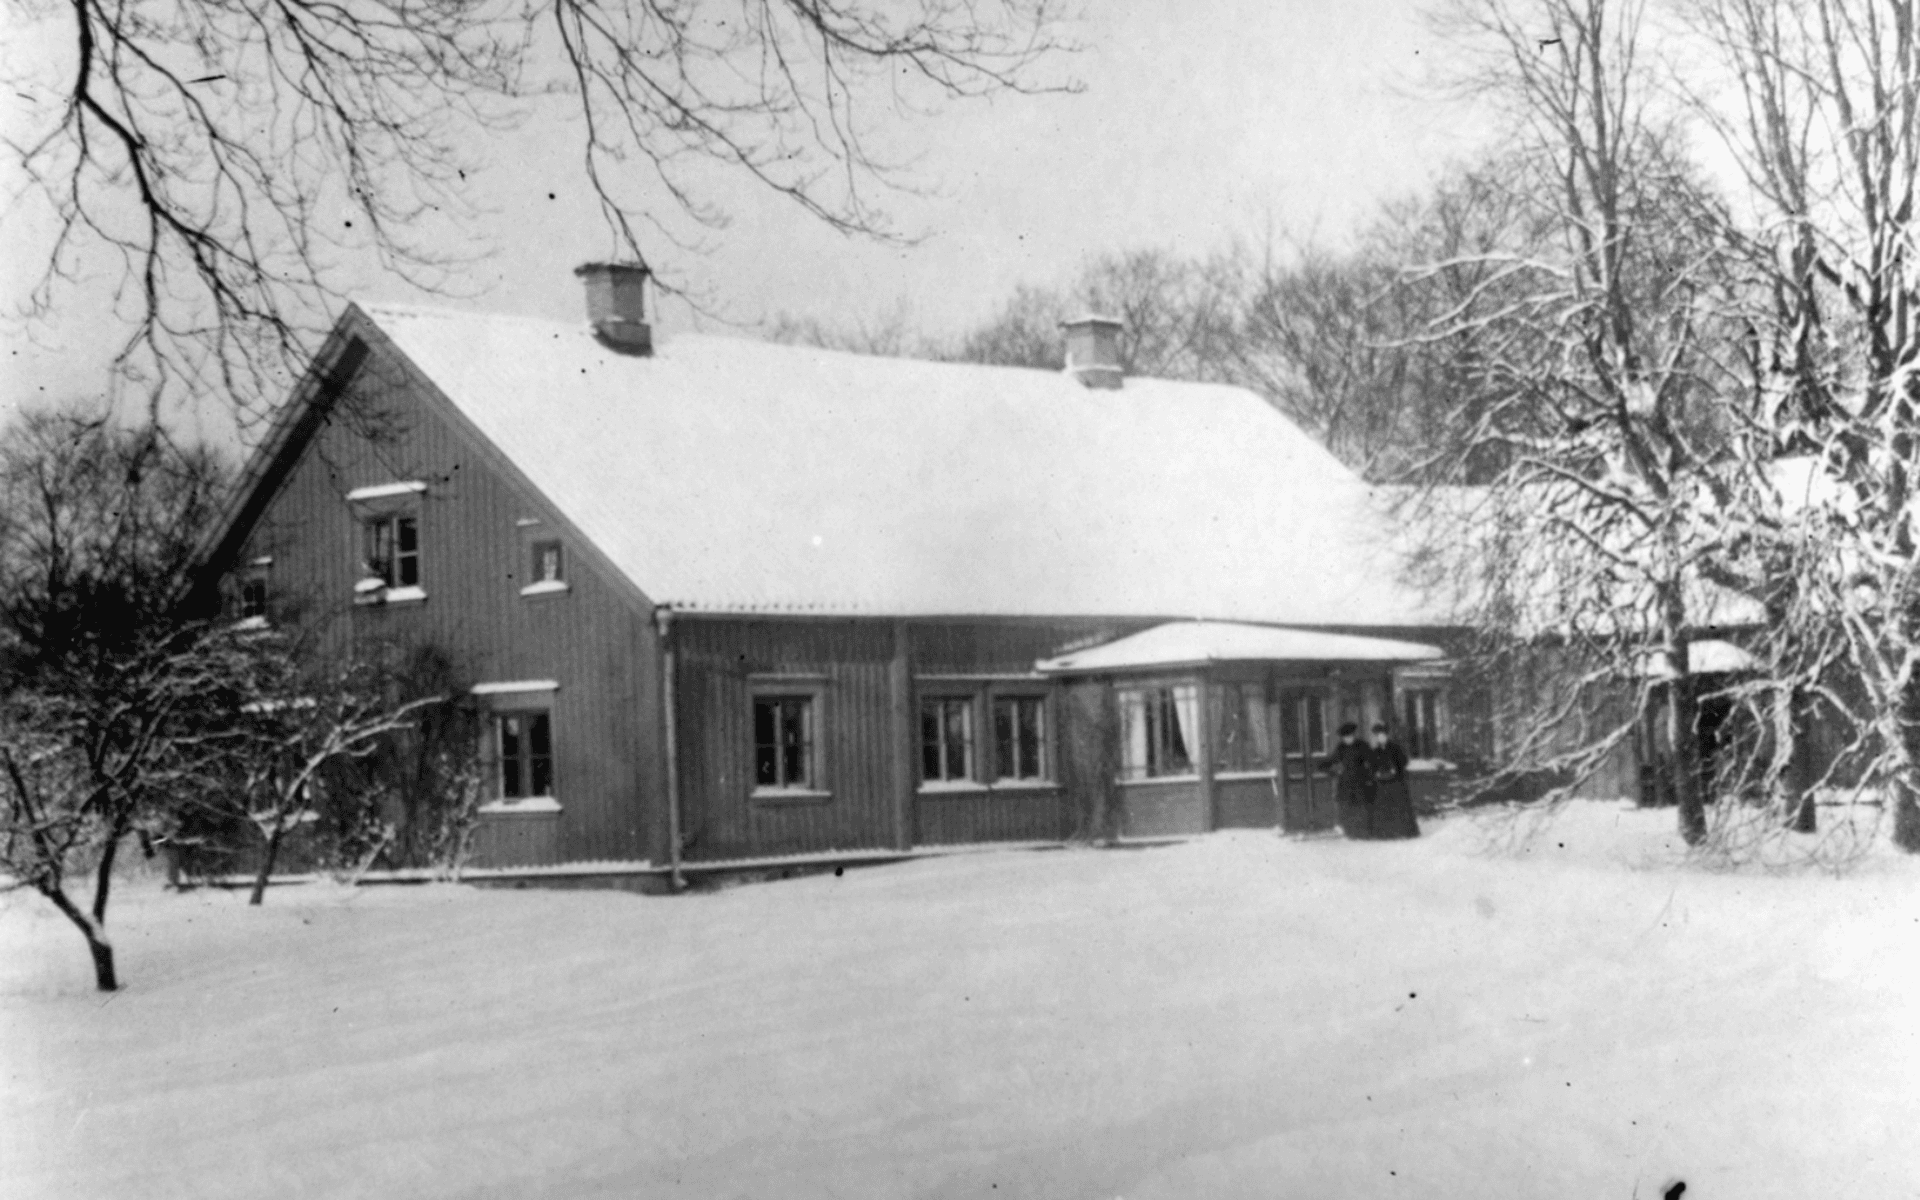 Gamla prästgården med ett snötäckt tak och marken likaså. Fotografering - 1890 — 1900.